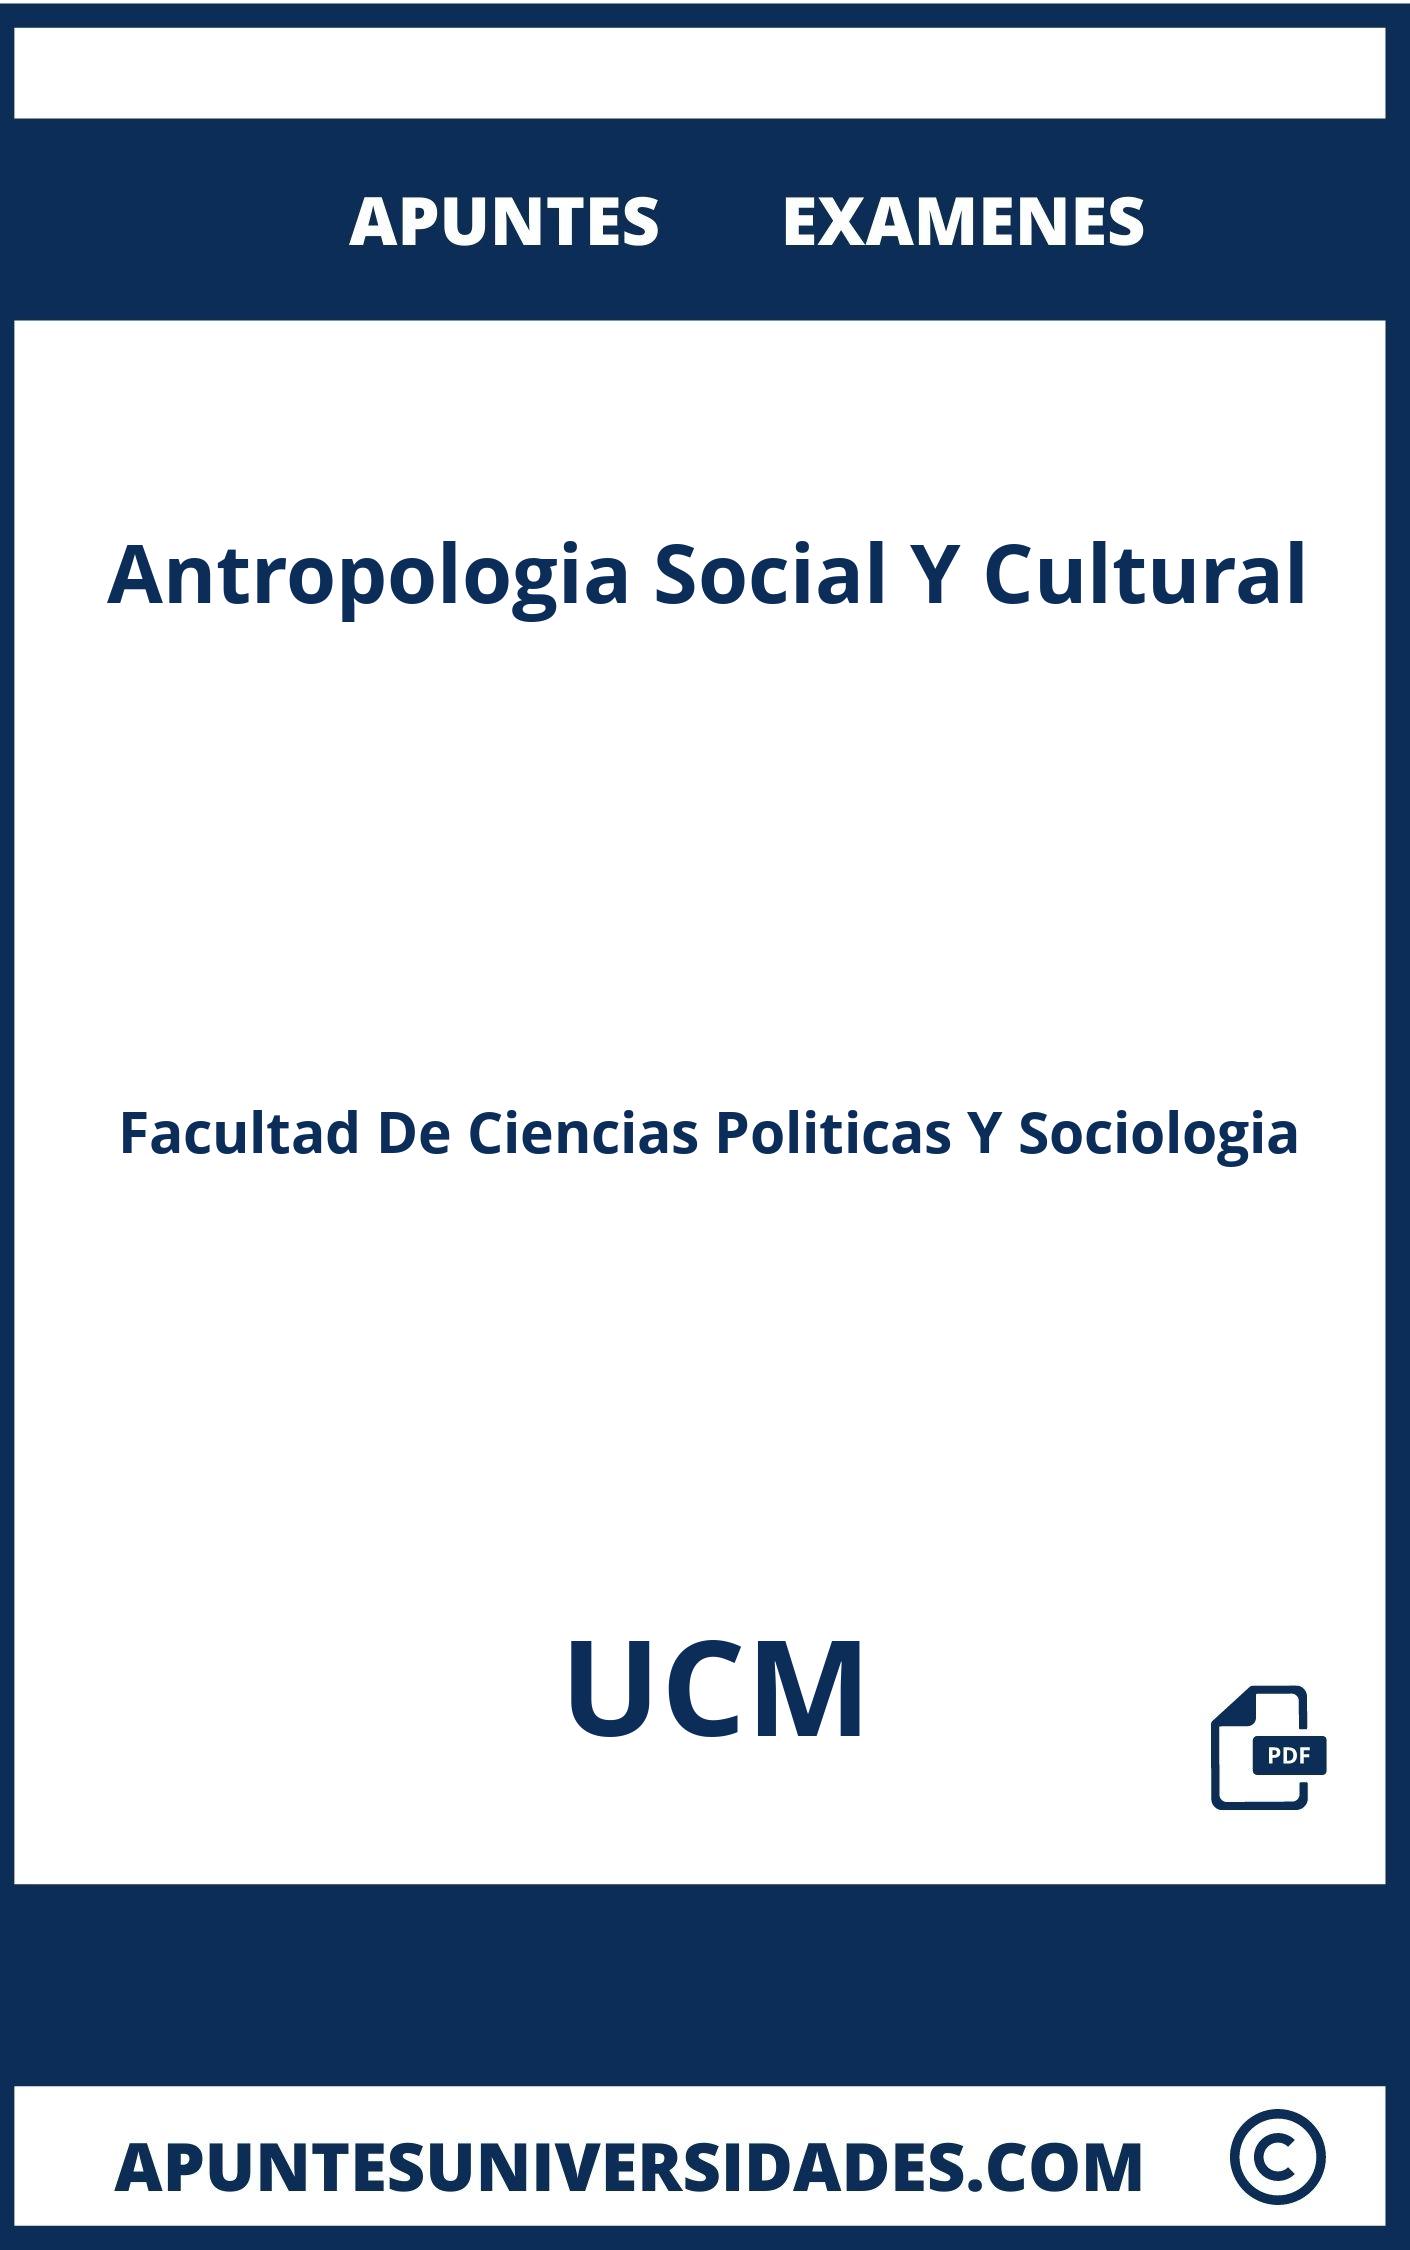 Antropologia Social Y Cultural UCM Examenes Apuntes